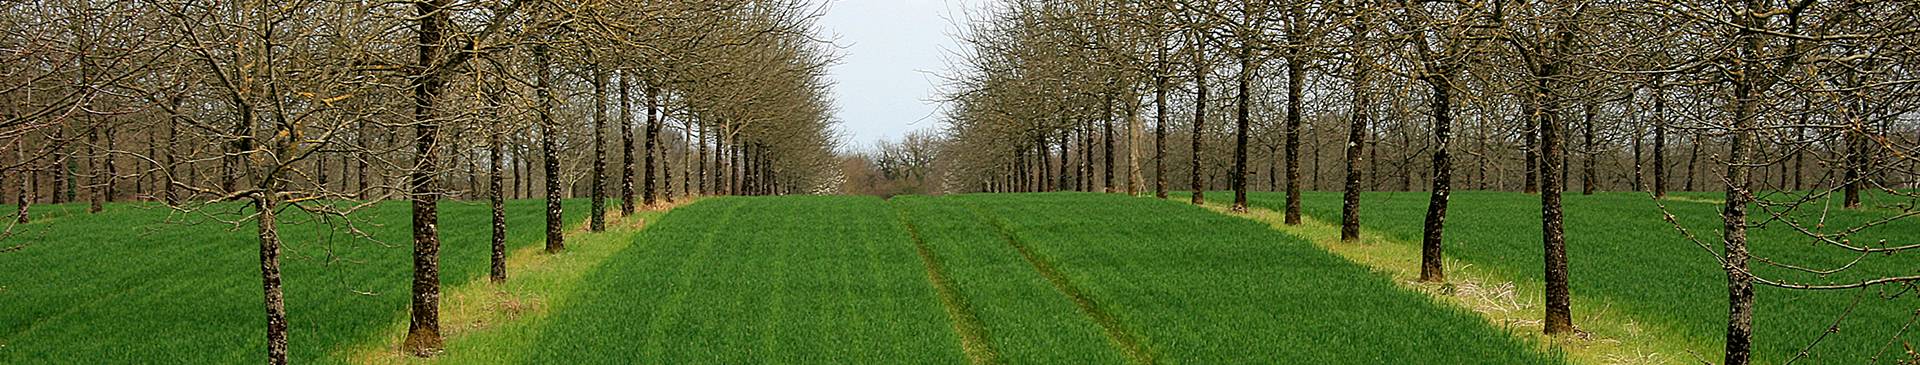 photo d'agroforesterie en climat tempéré